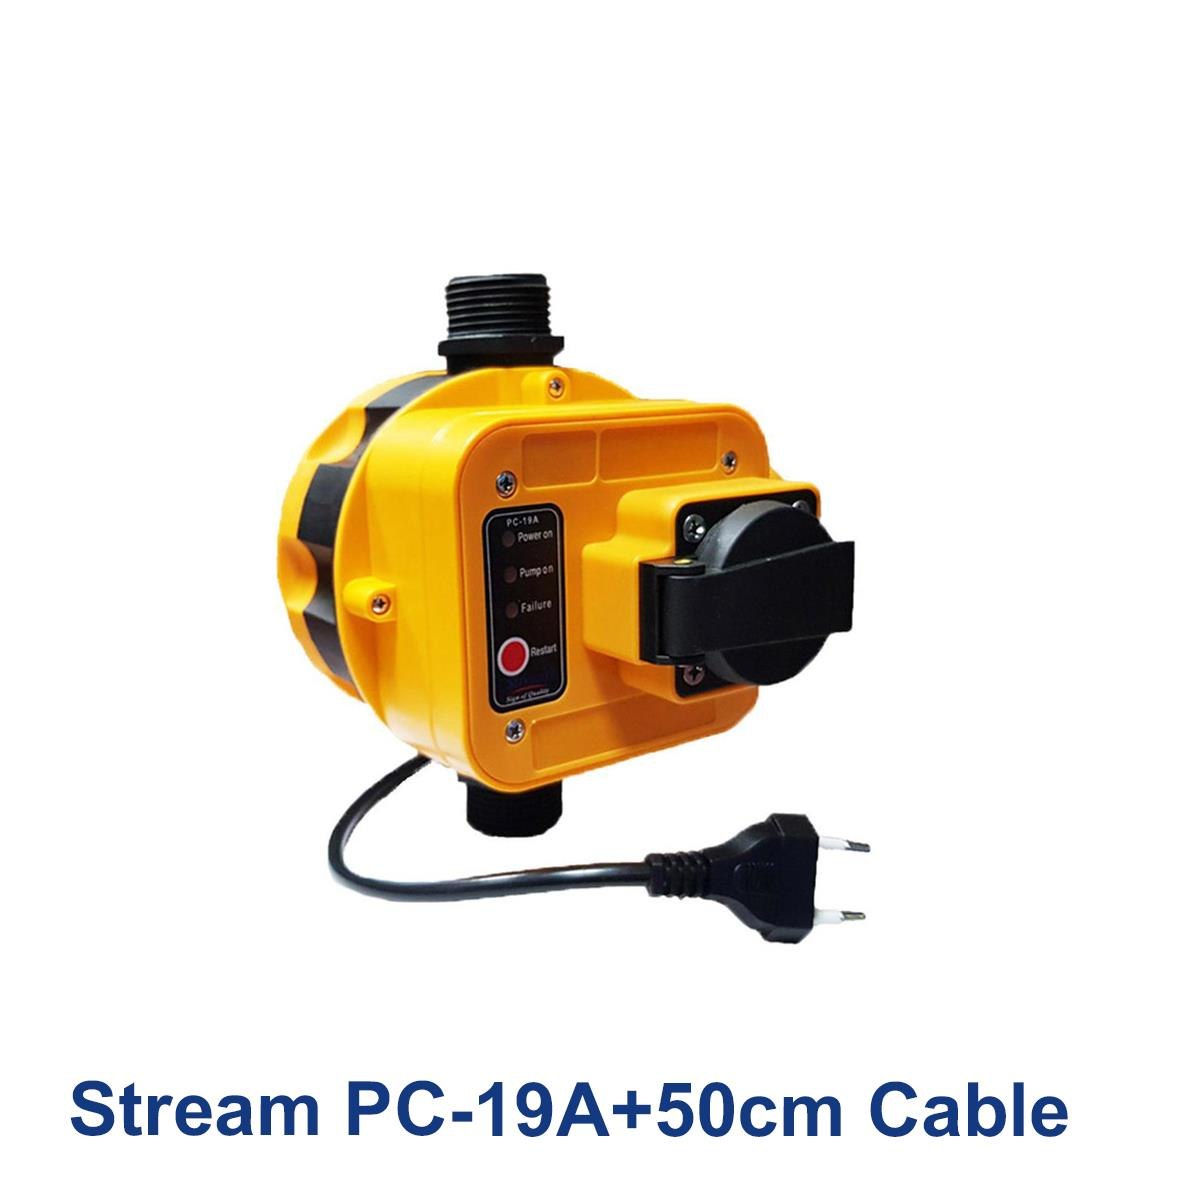 Stream-PC-19A+50cm-Cable